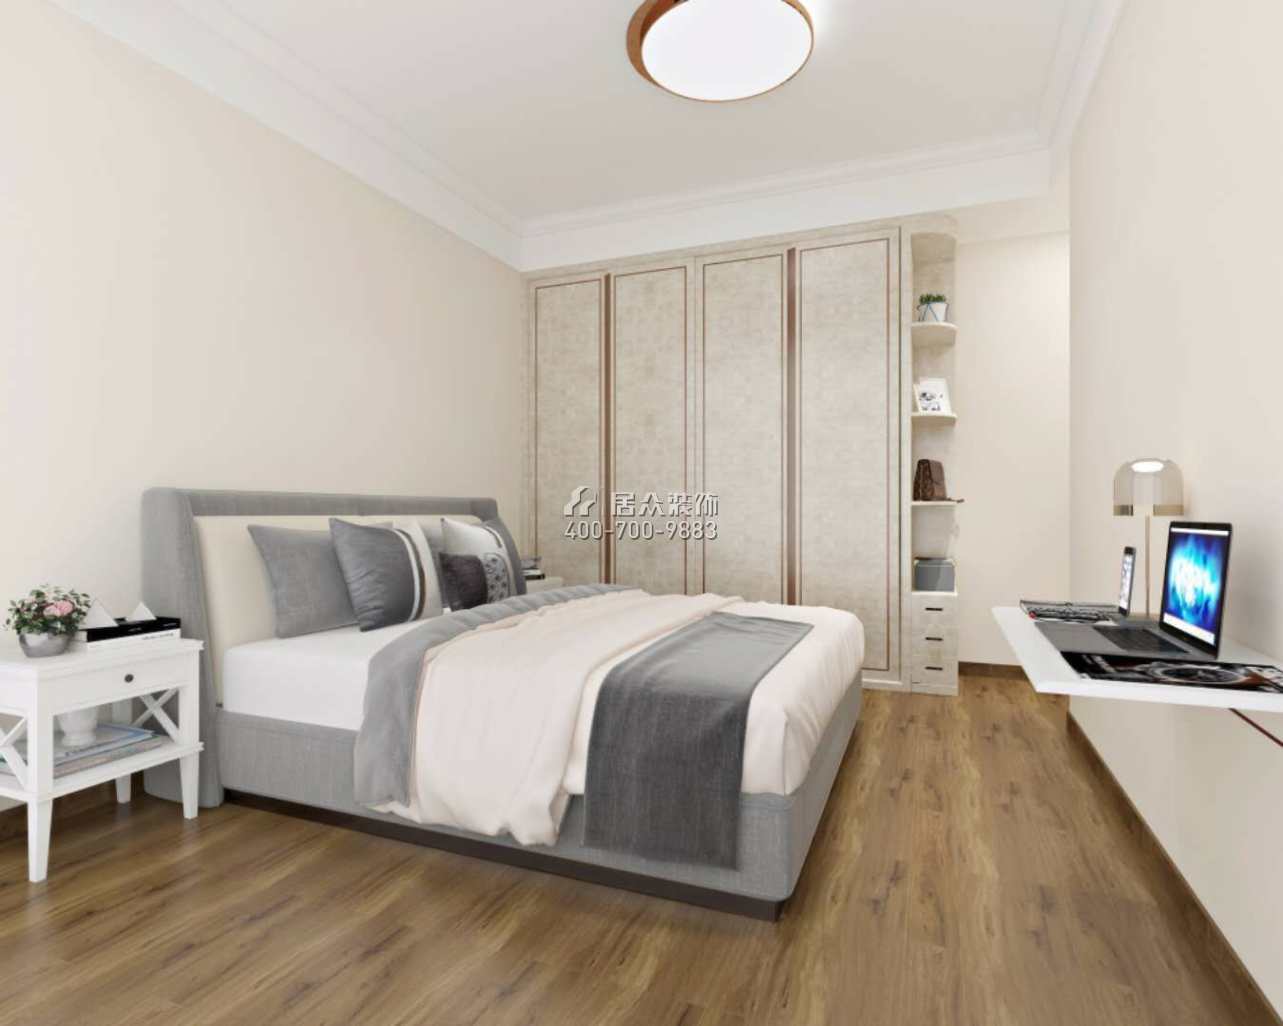 潤科華府89平方米現代簡約風格平層戶型臥室裝修效果圖